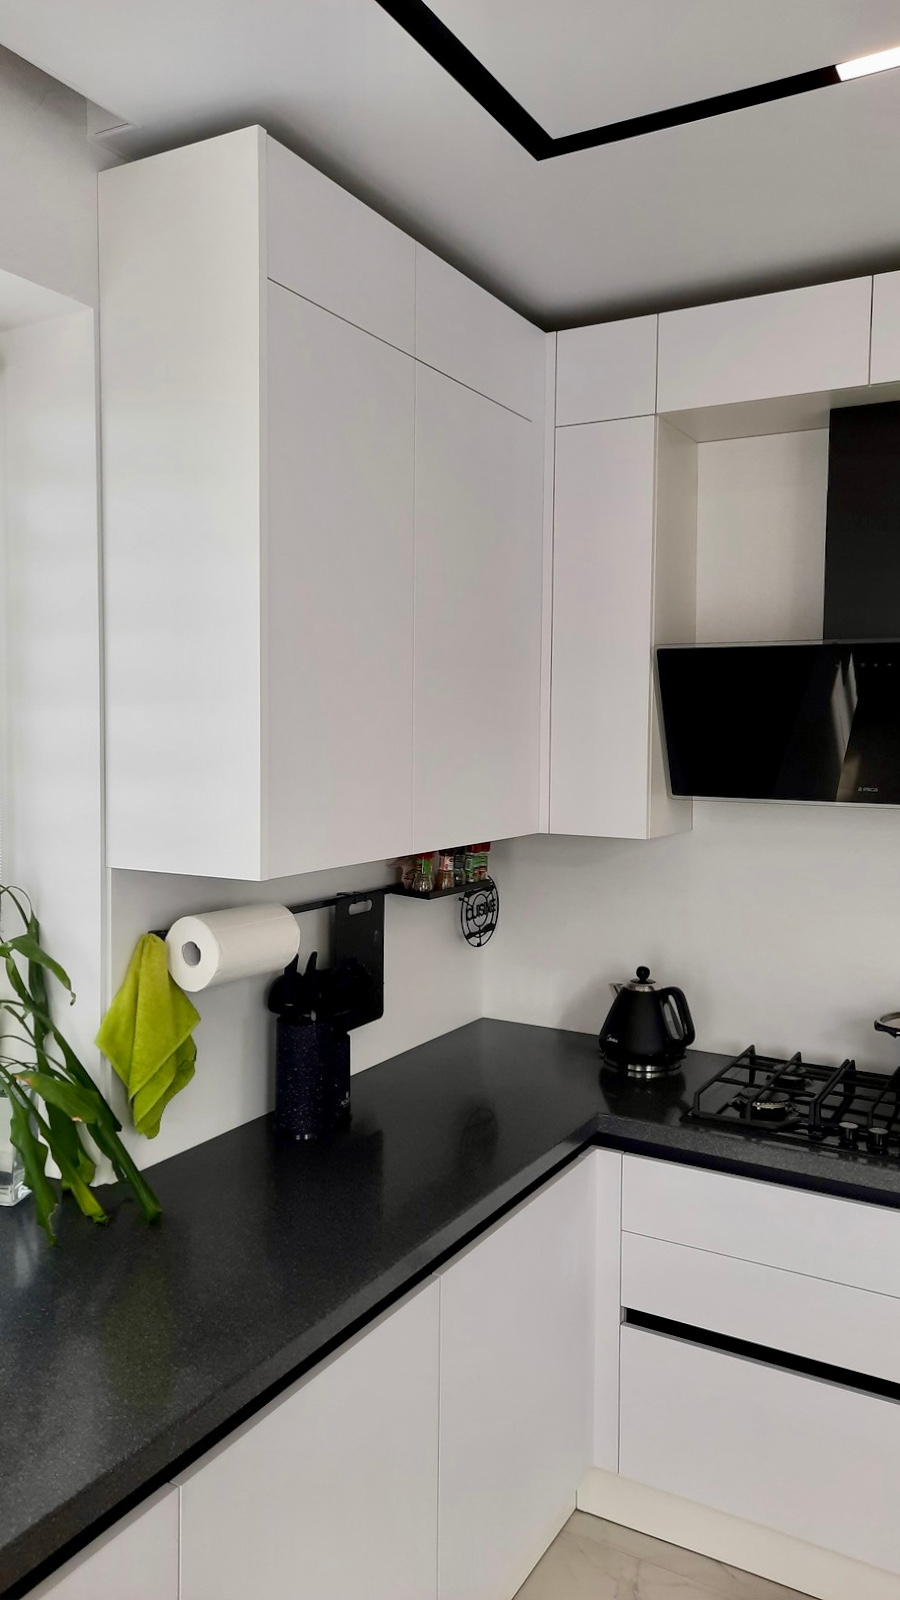 Особенности интерьера черно-белой кухни в современном стиле (20+ реальных фото)